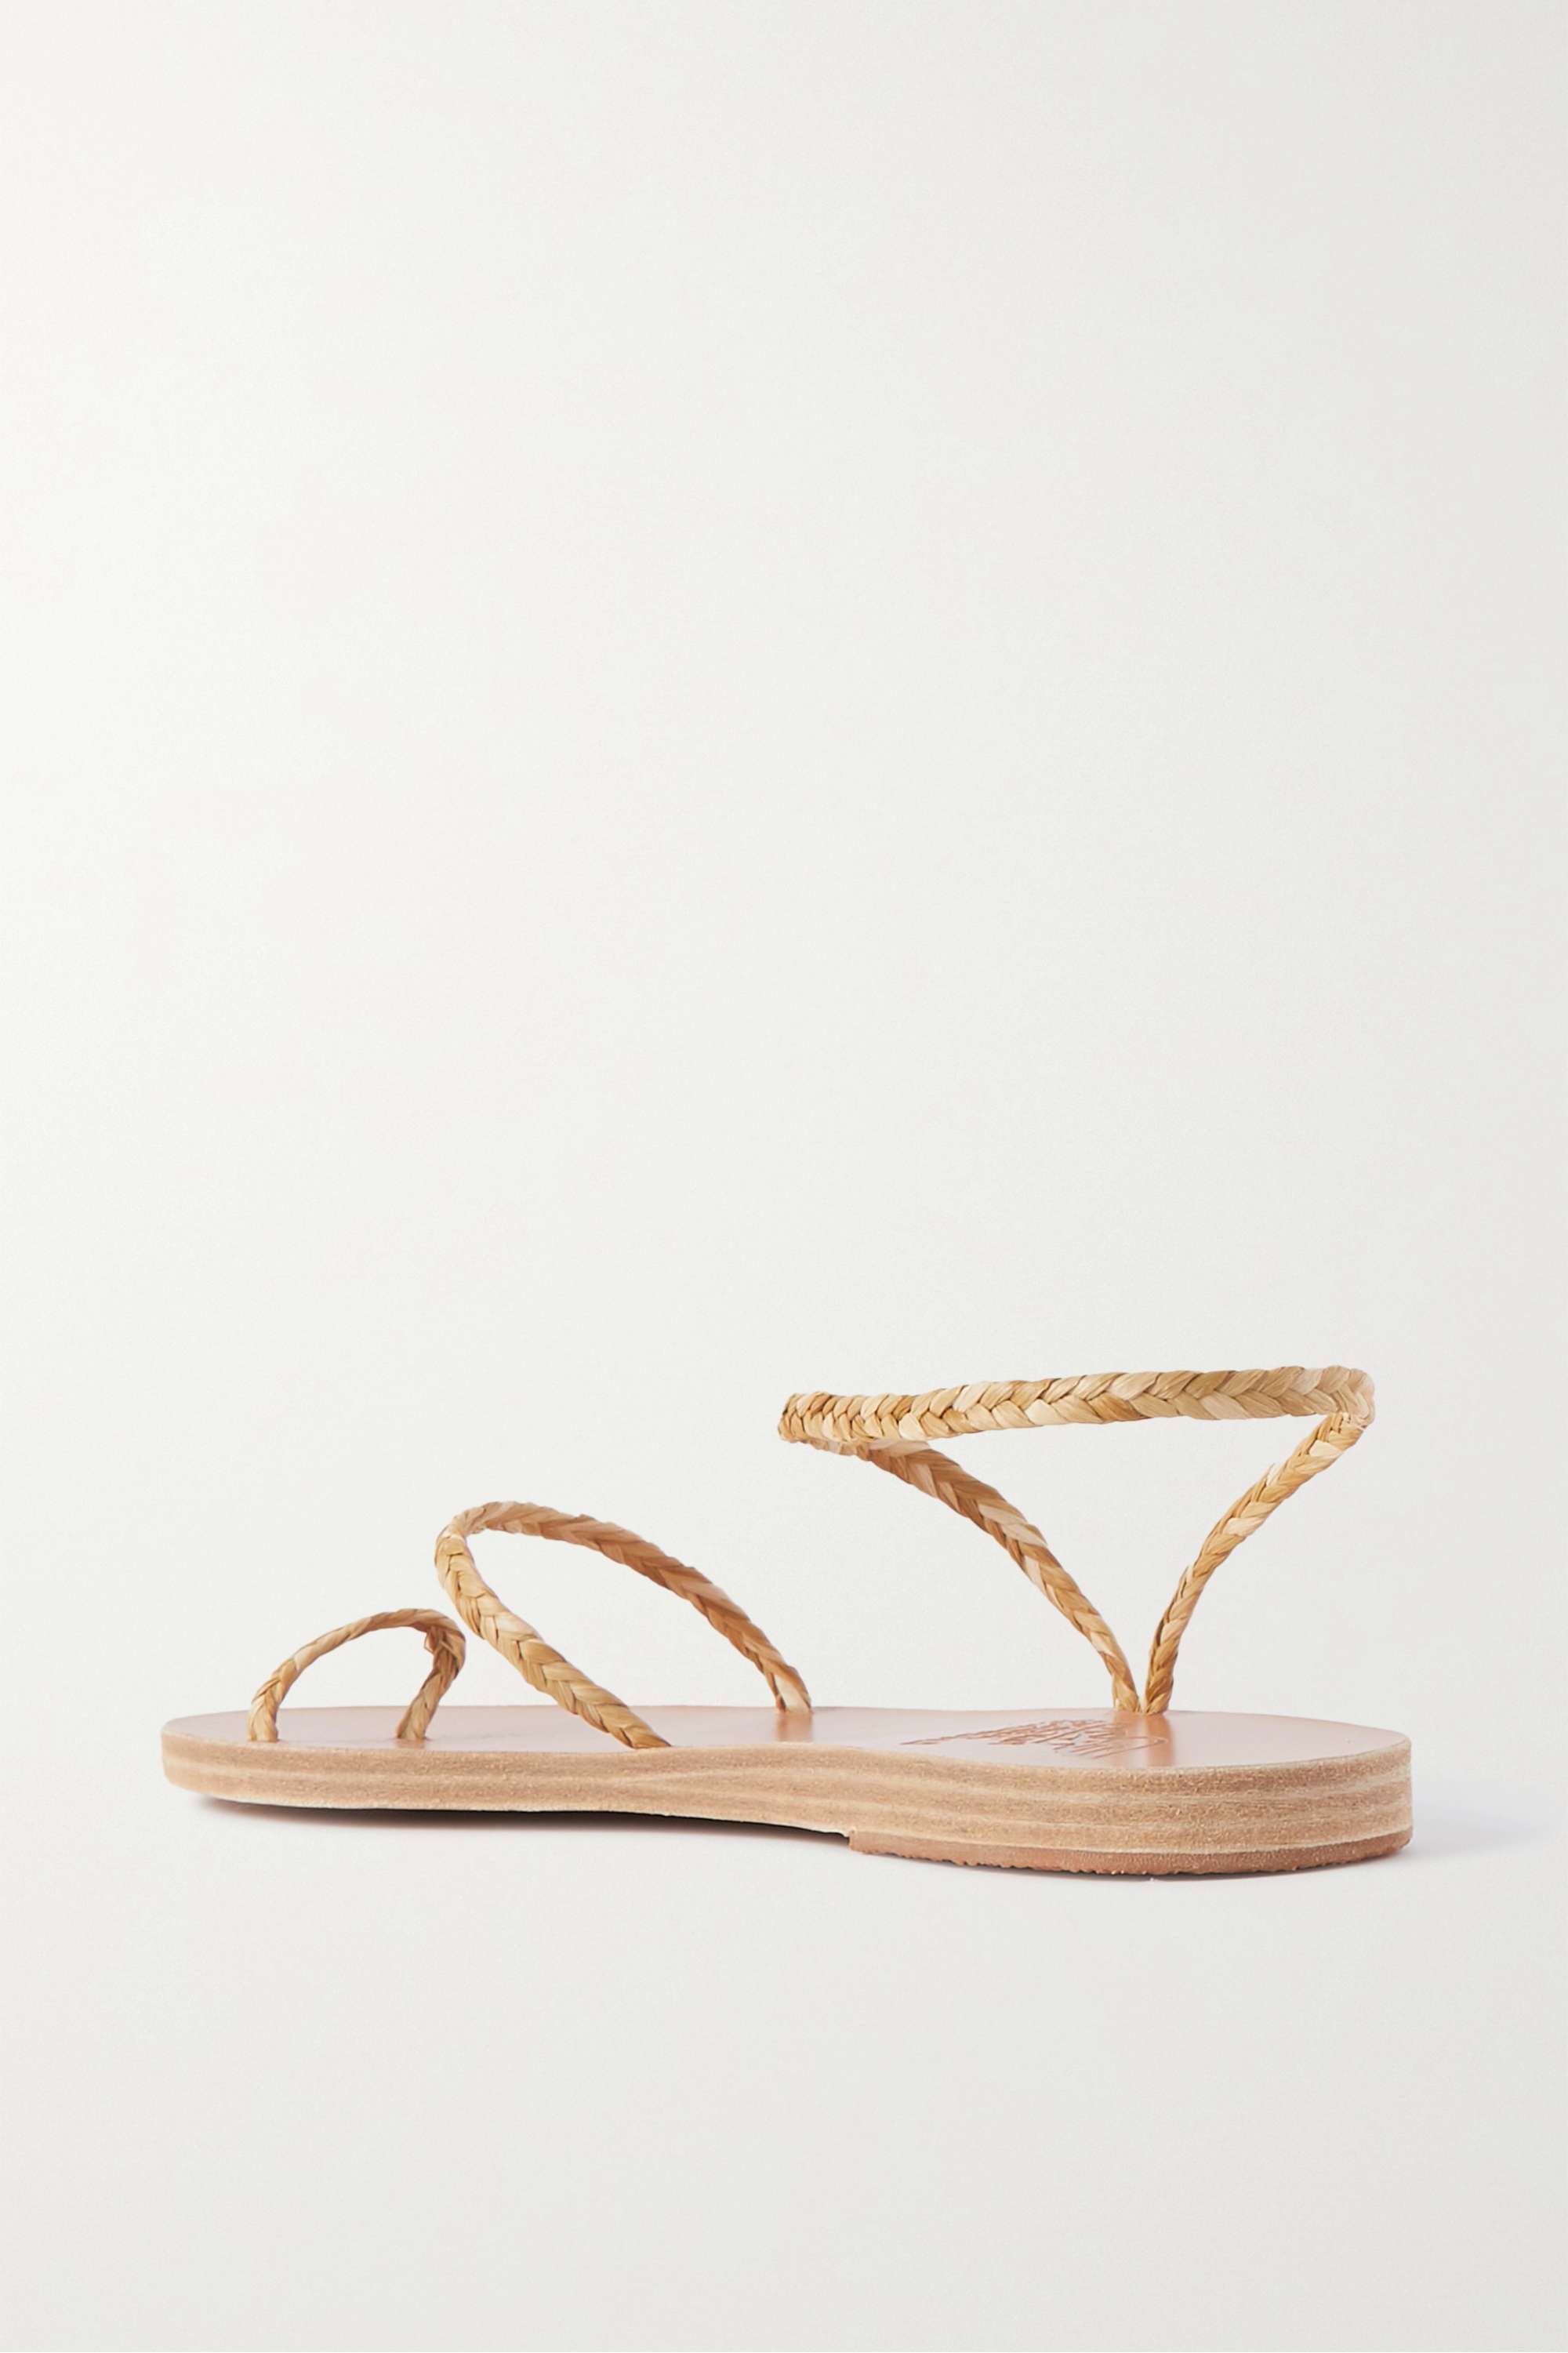 ANCIENT GREEK SANDALS плетеные сандалии Eleftheria из рафии, золото кожаные сандалии homeria ancient greek sandals белый